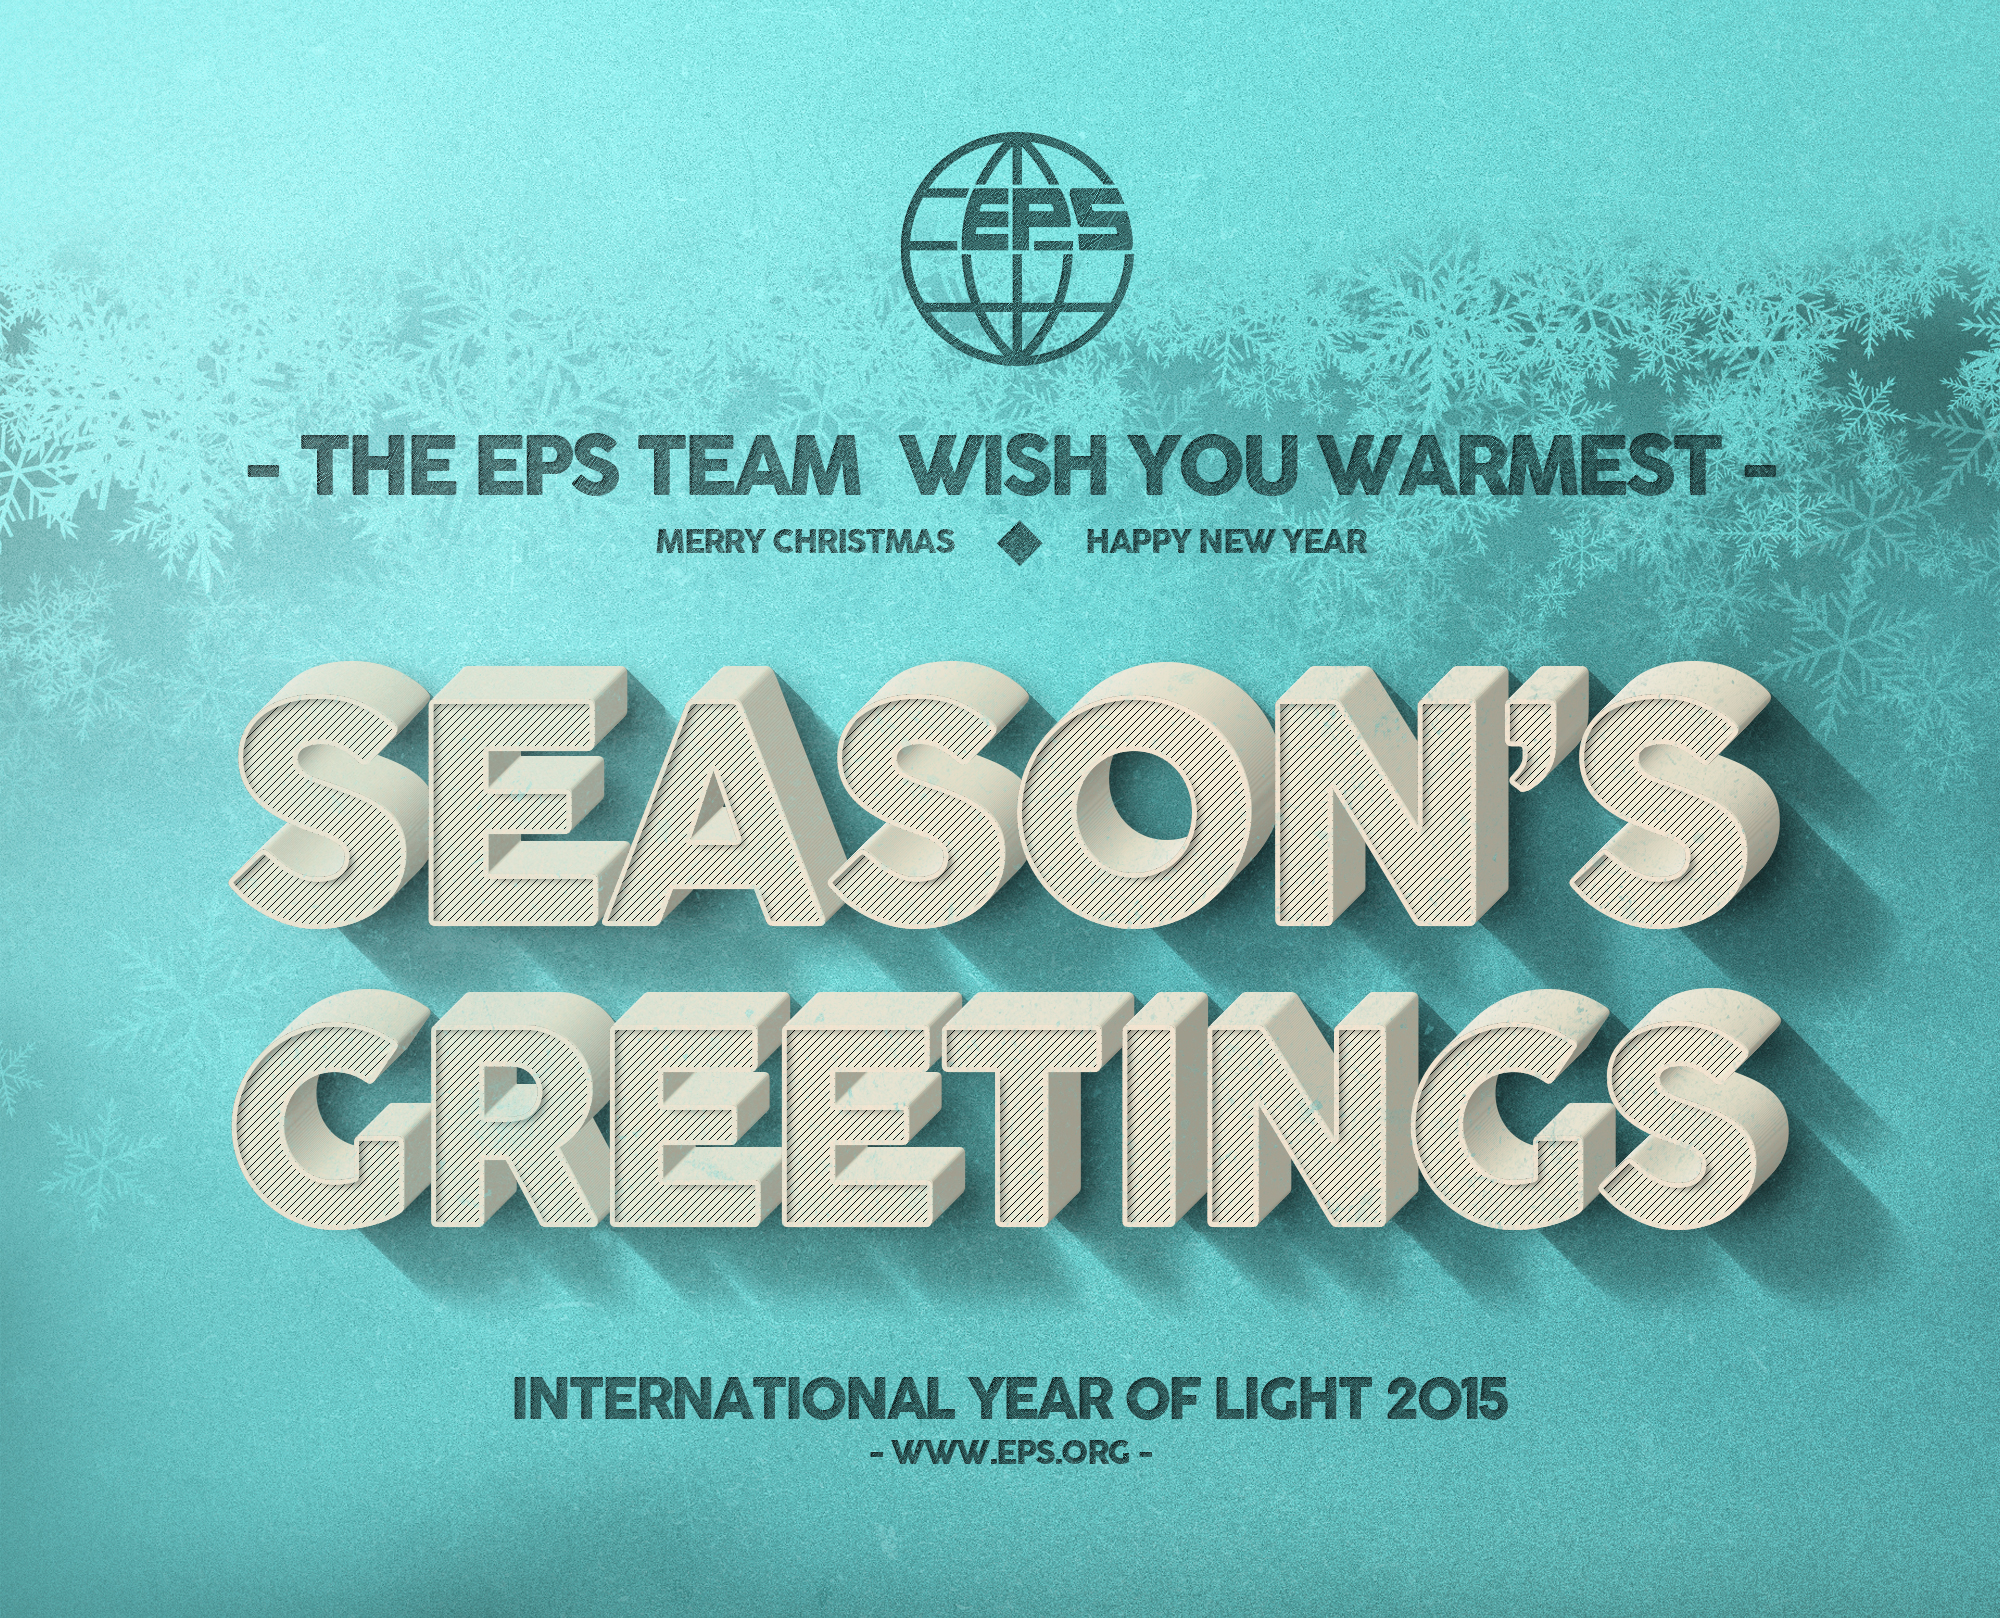 Season's greetings from EPS